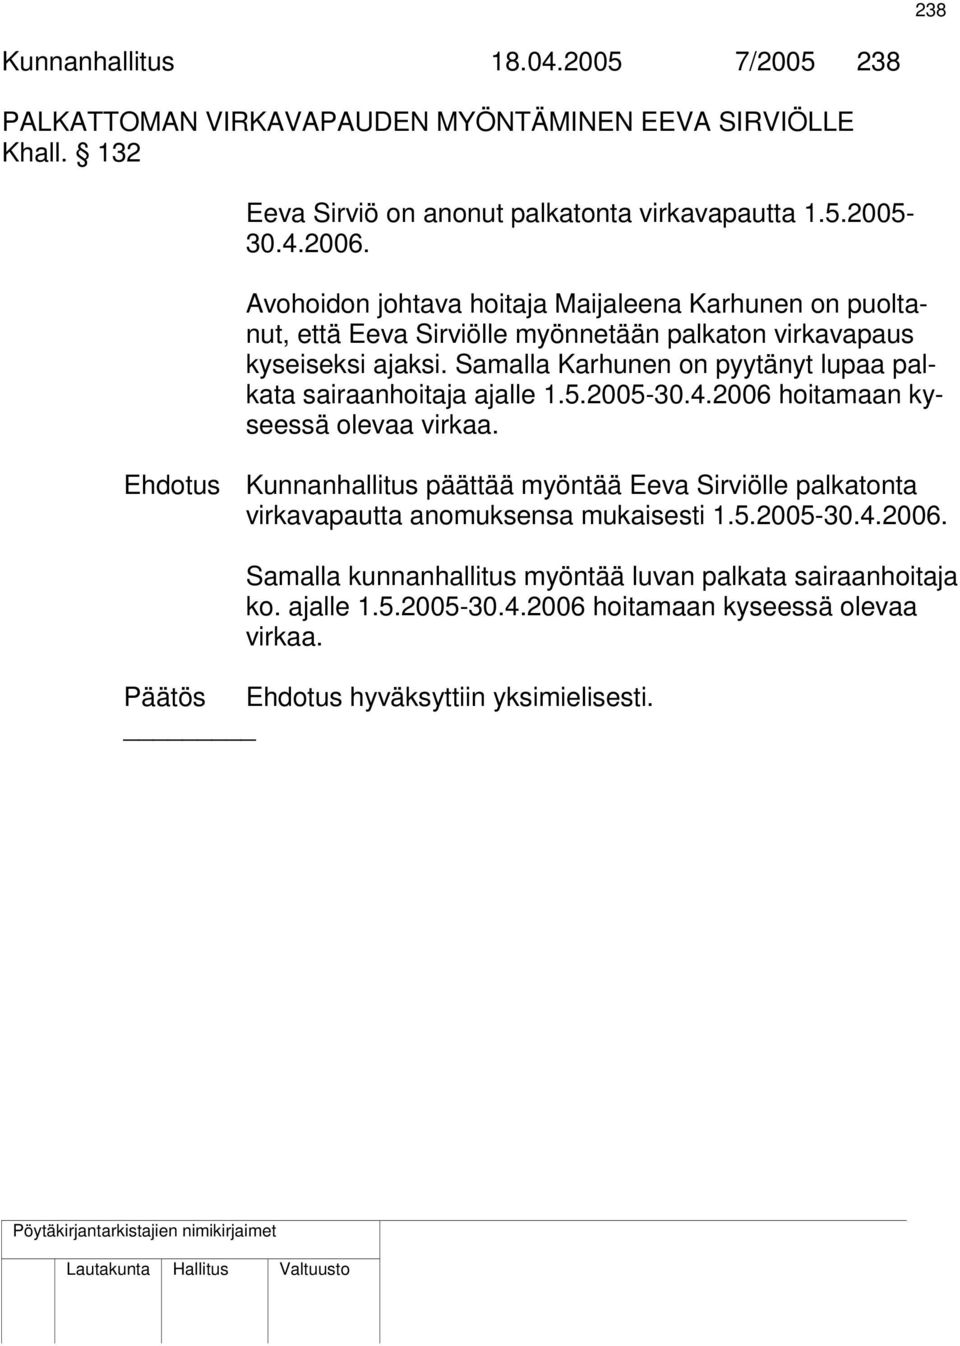 Samalla Karhunen on pyytänyt lupaa palkata sairaanhoitaja ajalle 1.5.2005-30.4.2006 hoitamaan kyseessä olevaa virkaa.